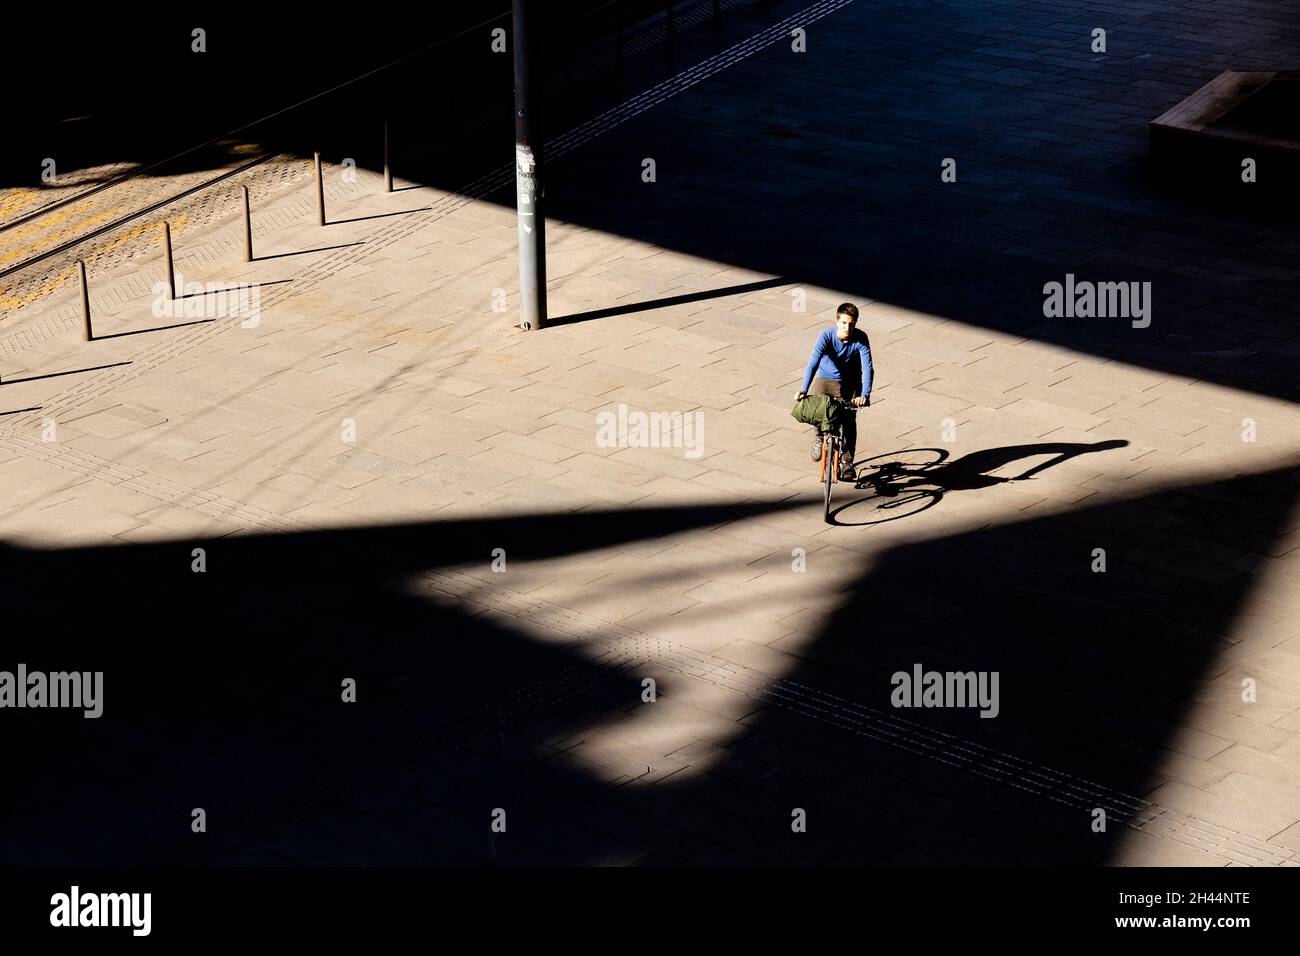 Belgrado, Serbia - 26 de octubre de 2020: Un adolescente montando en bicicleta en la plaza de la ciudad a la luz del sol, vista de alto ángulo con sombras Foto de stock